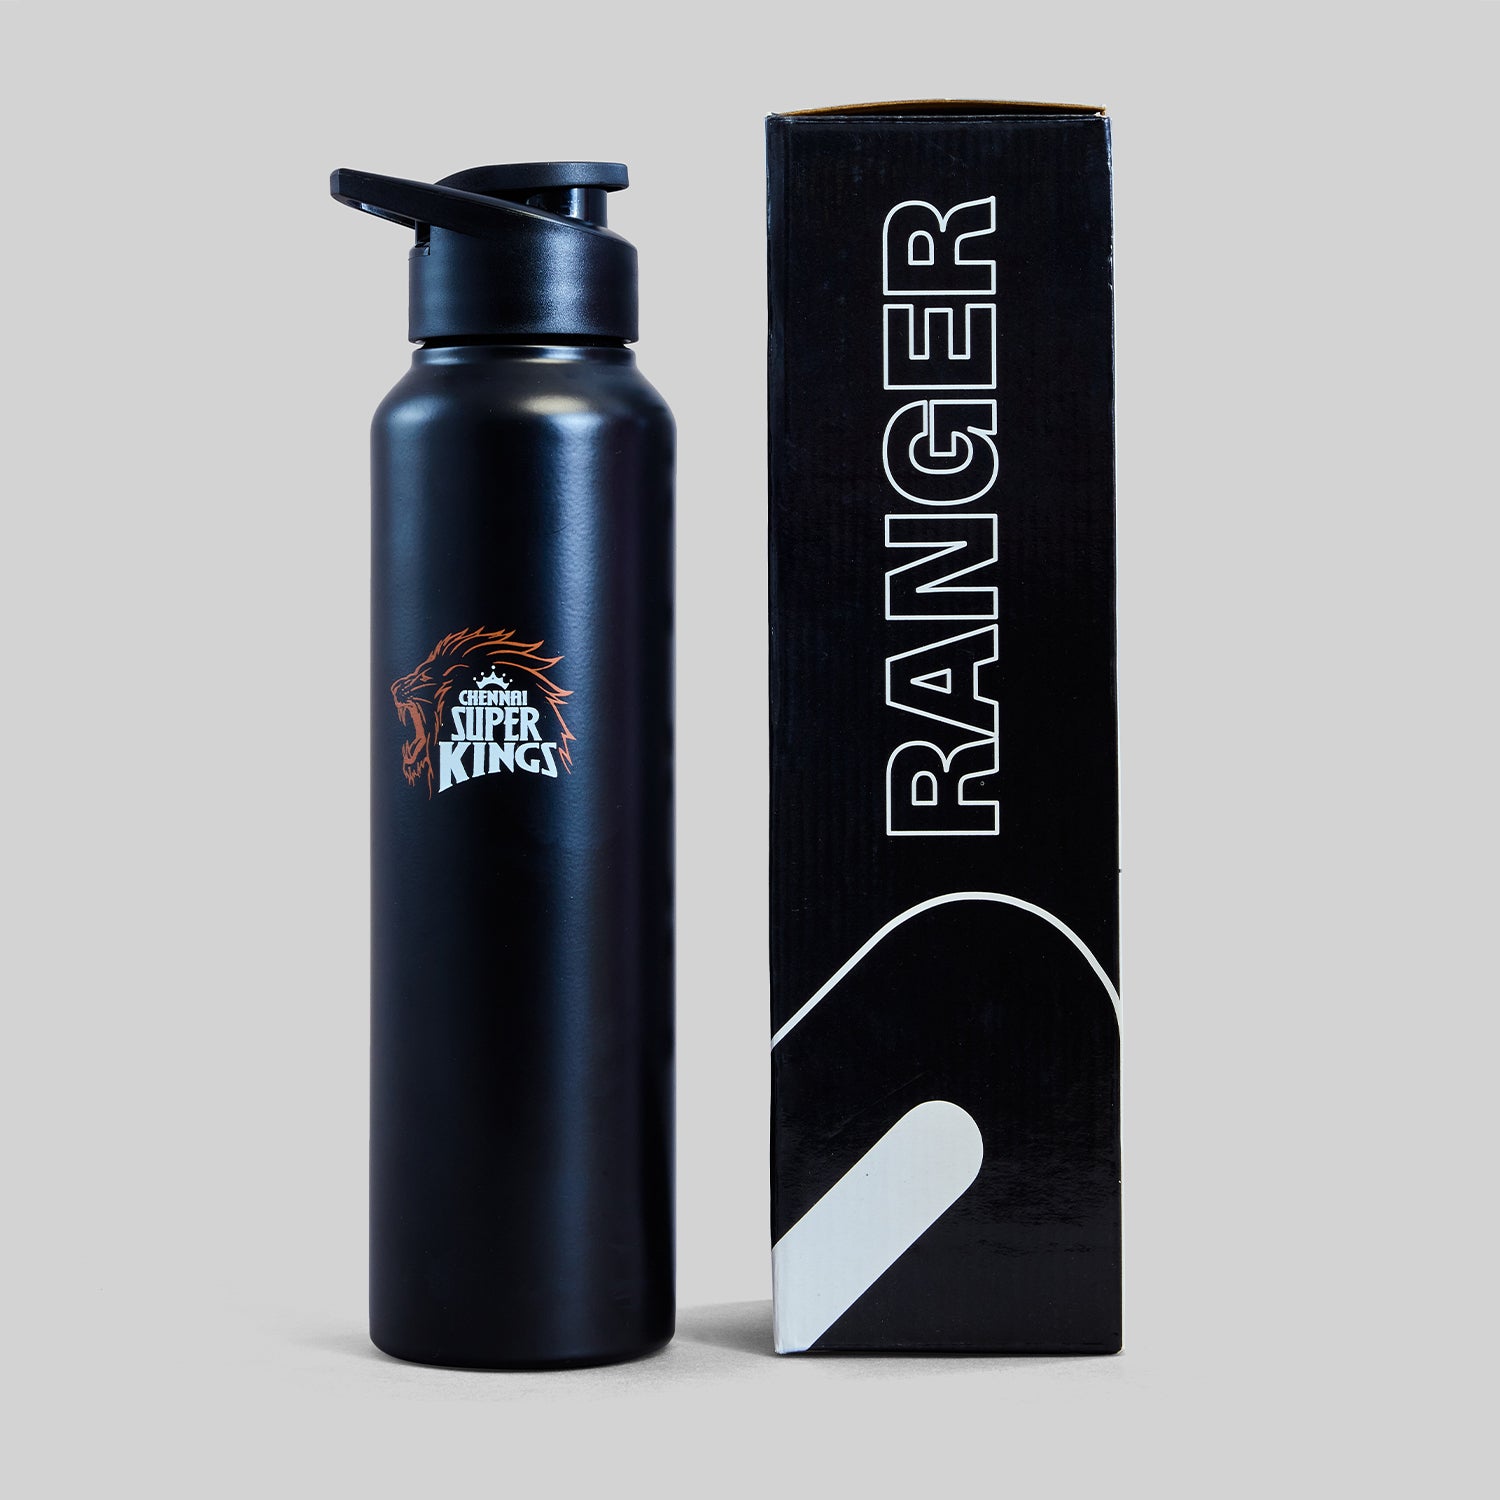 Official CSK Merch - Black Ranger Bottle